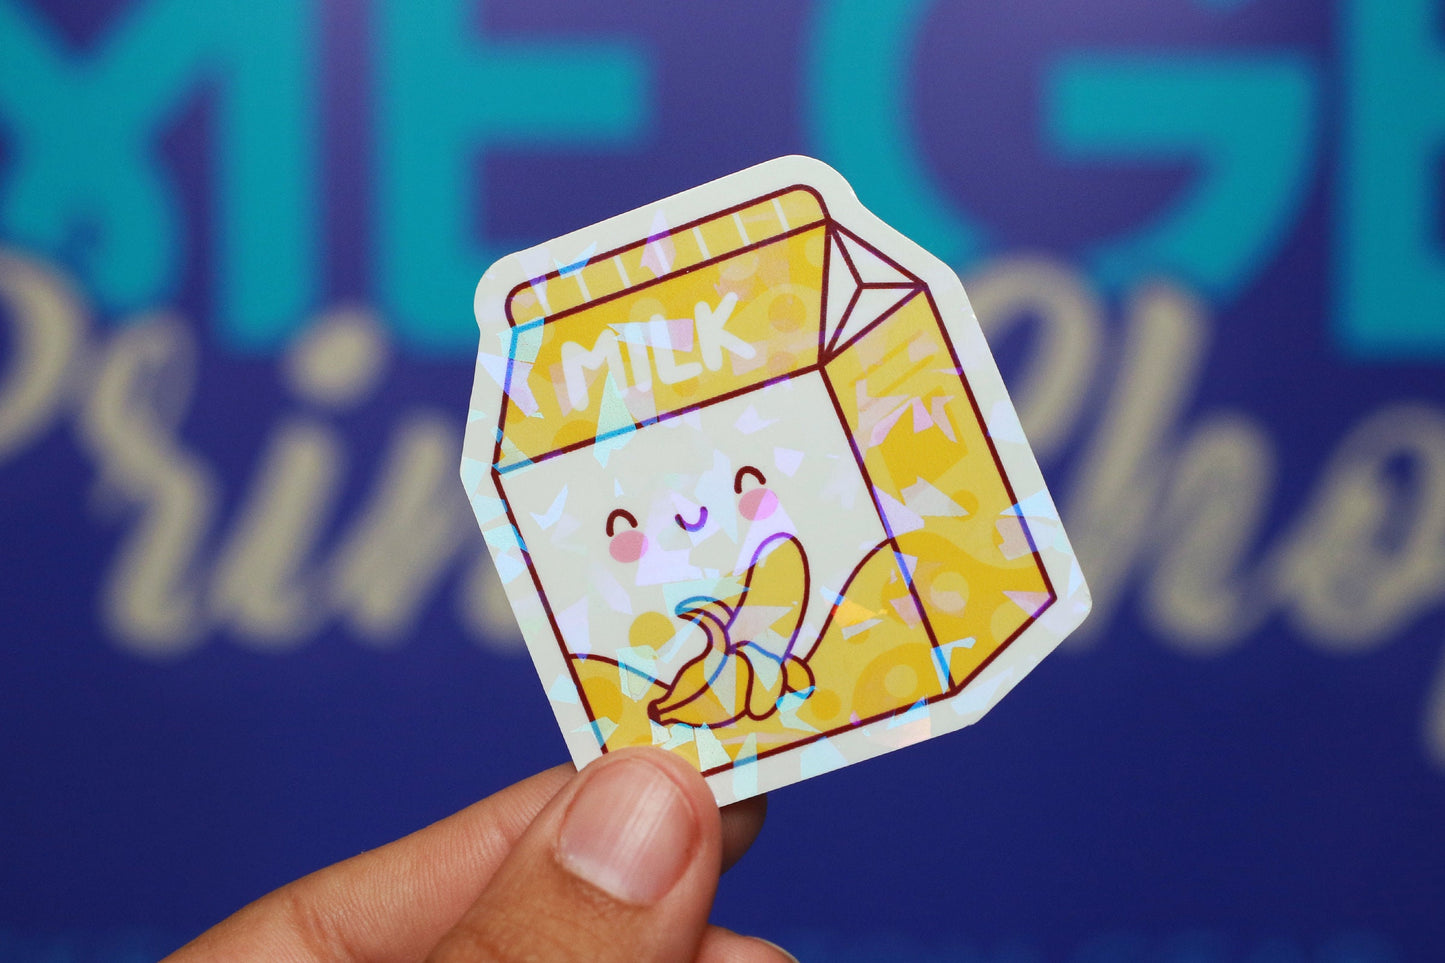 Kawaii Milk Cartons - Sticker Pack 